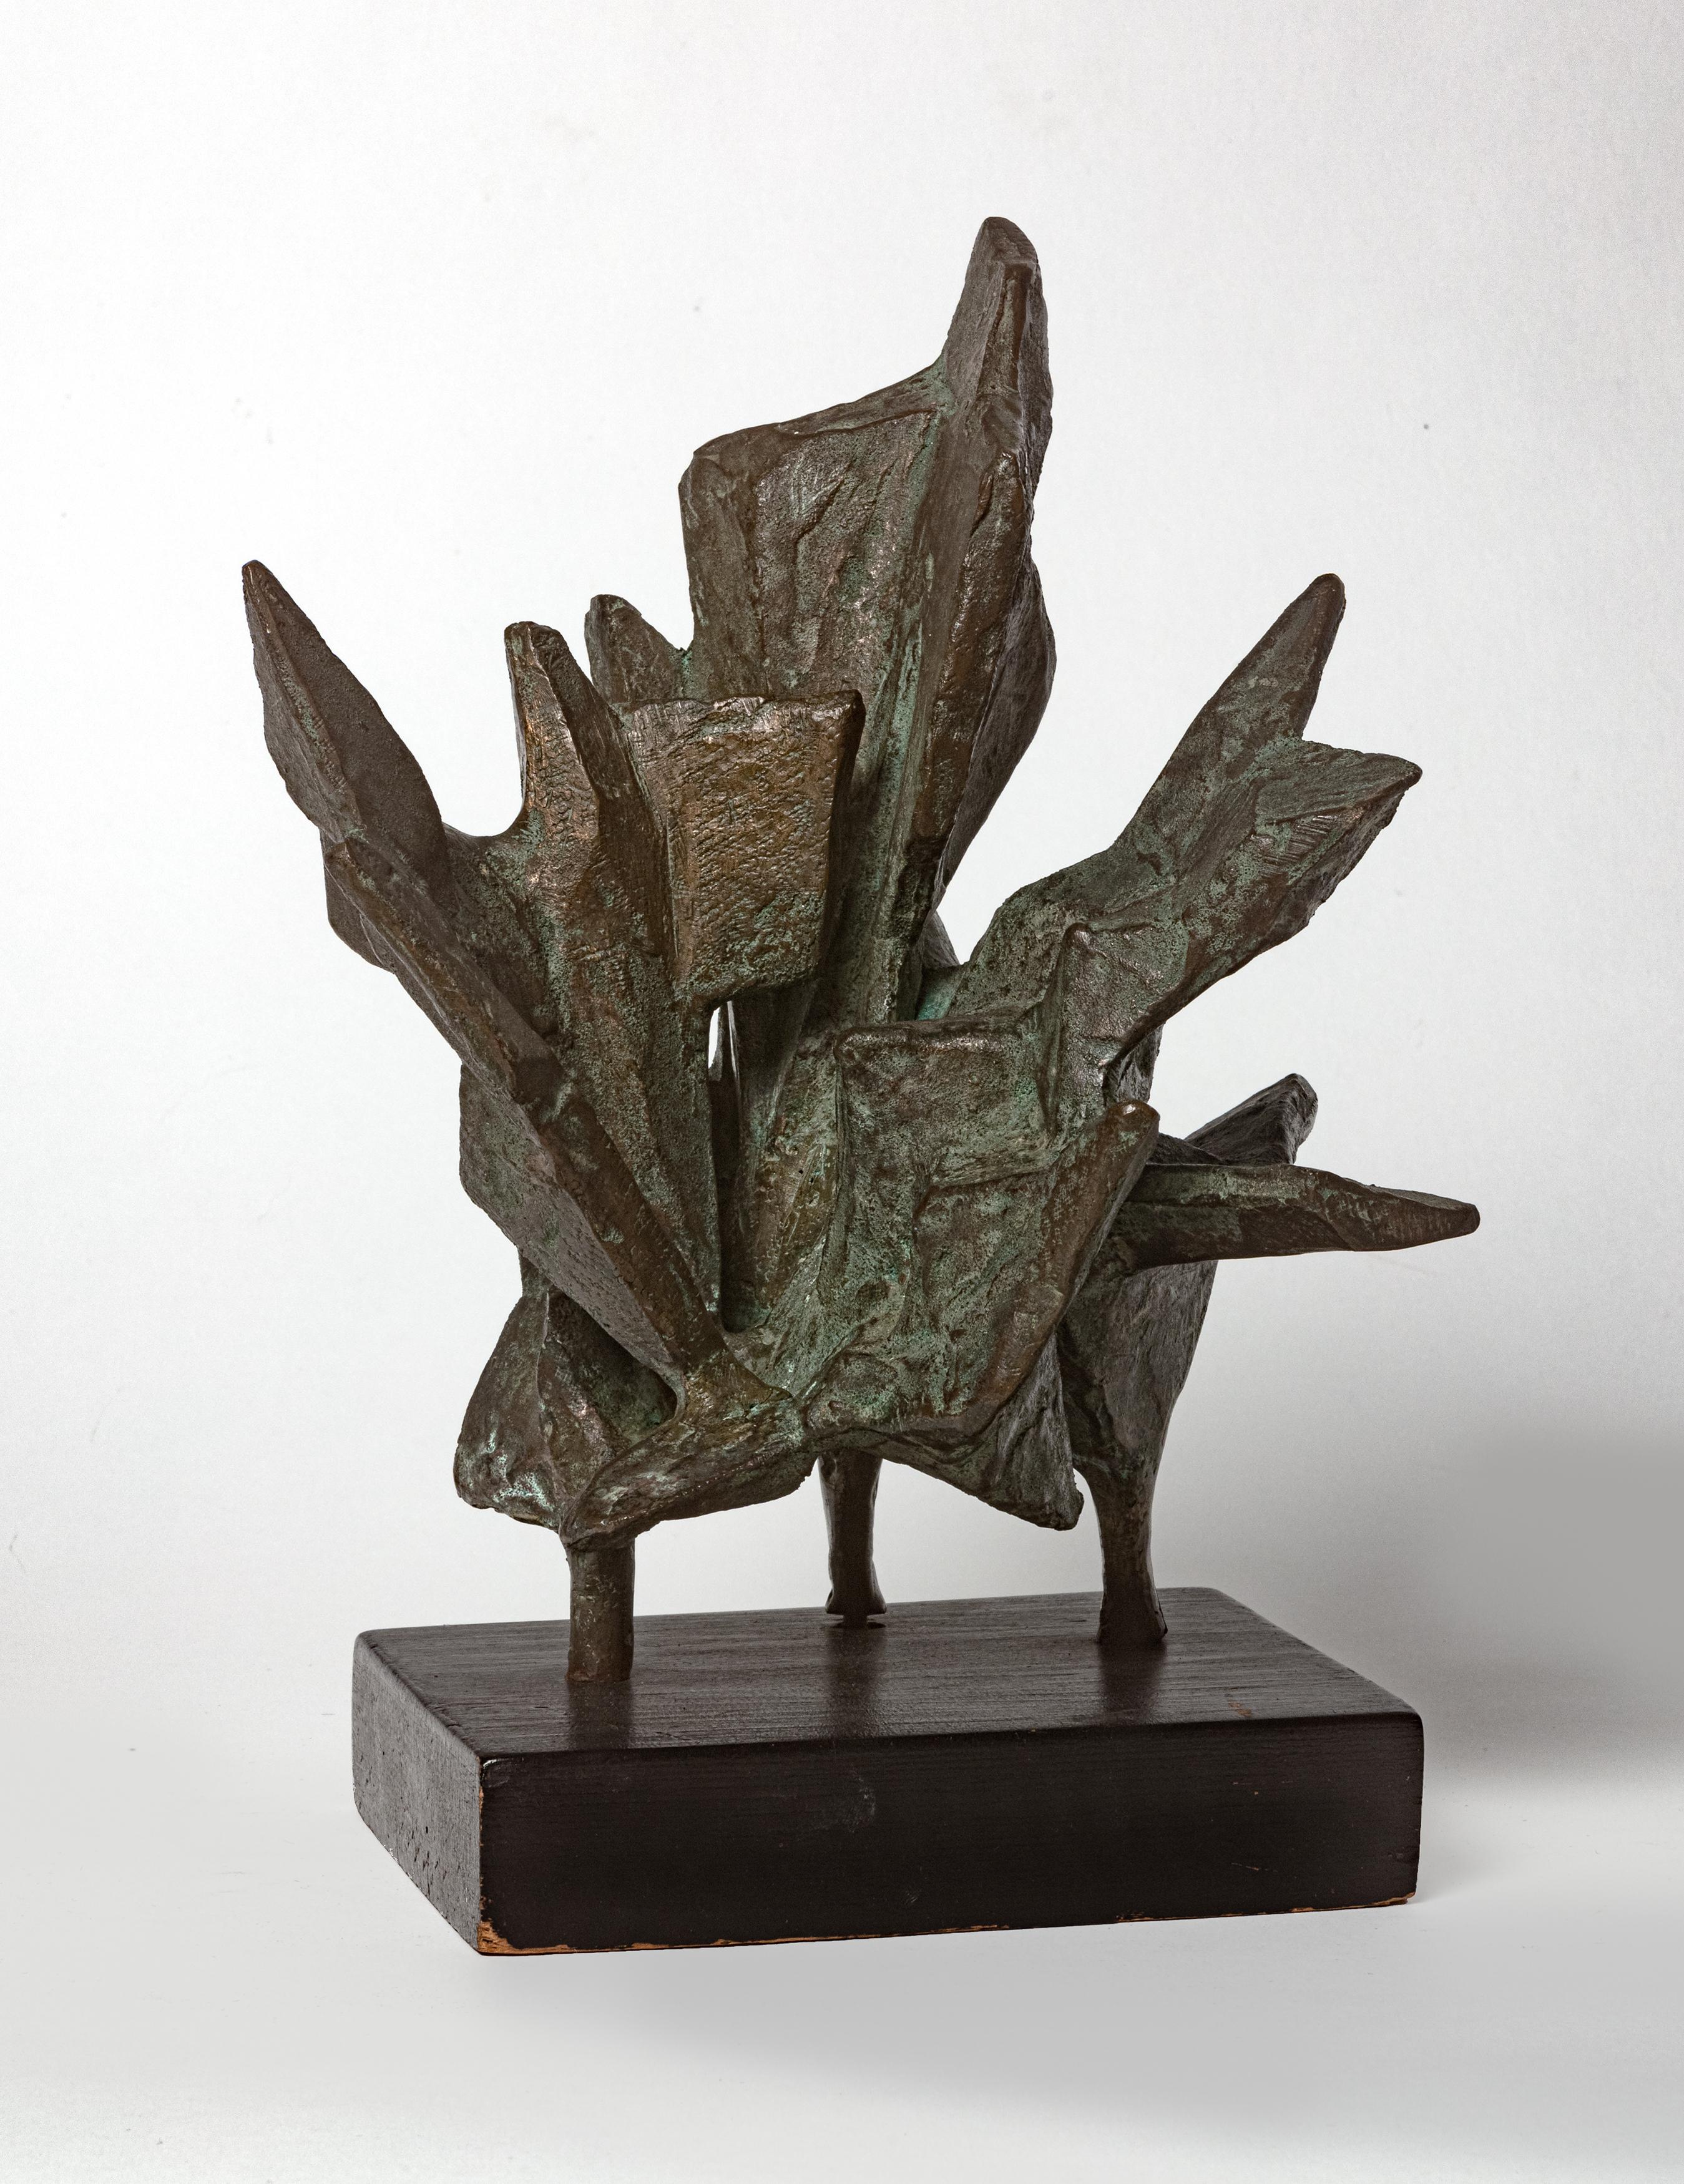 Lin Emery ist eine international anerkannte Bildhauerin. Ihre kinetischen Skulpturen stellen durch die sich ständig verändernde Konfiguration ihrer Teile ständig wechselnde Beziehungen her und interpretieren die lyrische Schönheit der natürlichen